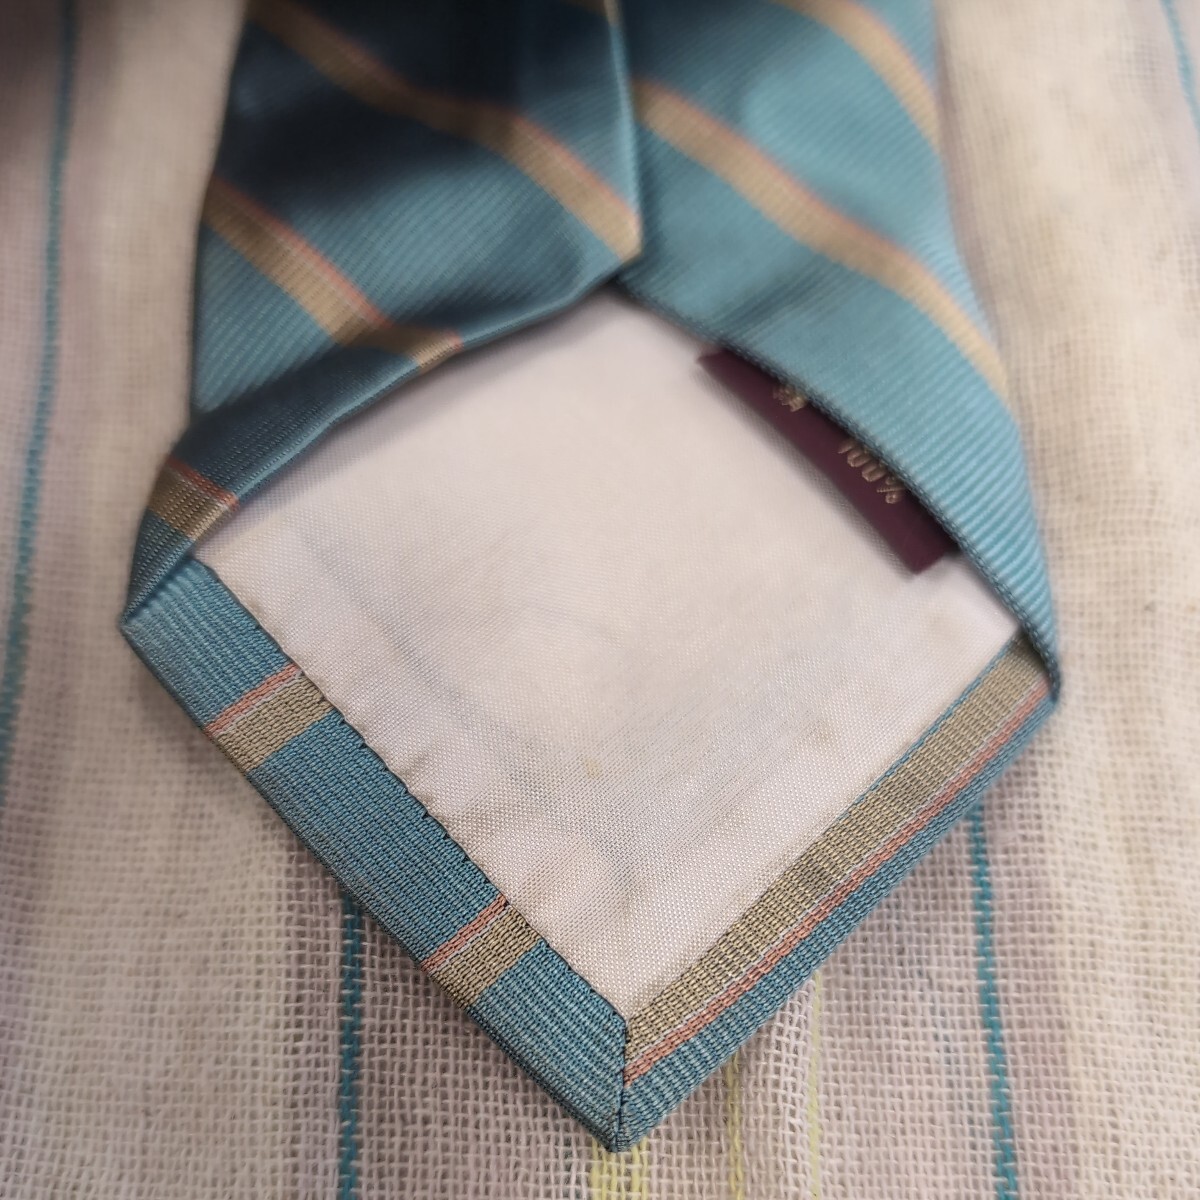 102 brand necktie Ralph Lauren CHAPS